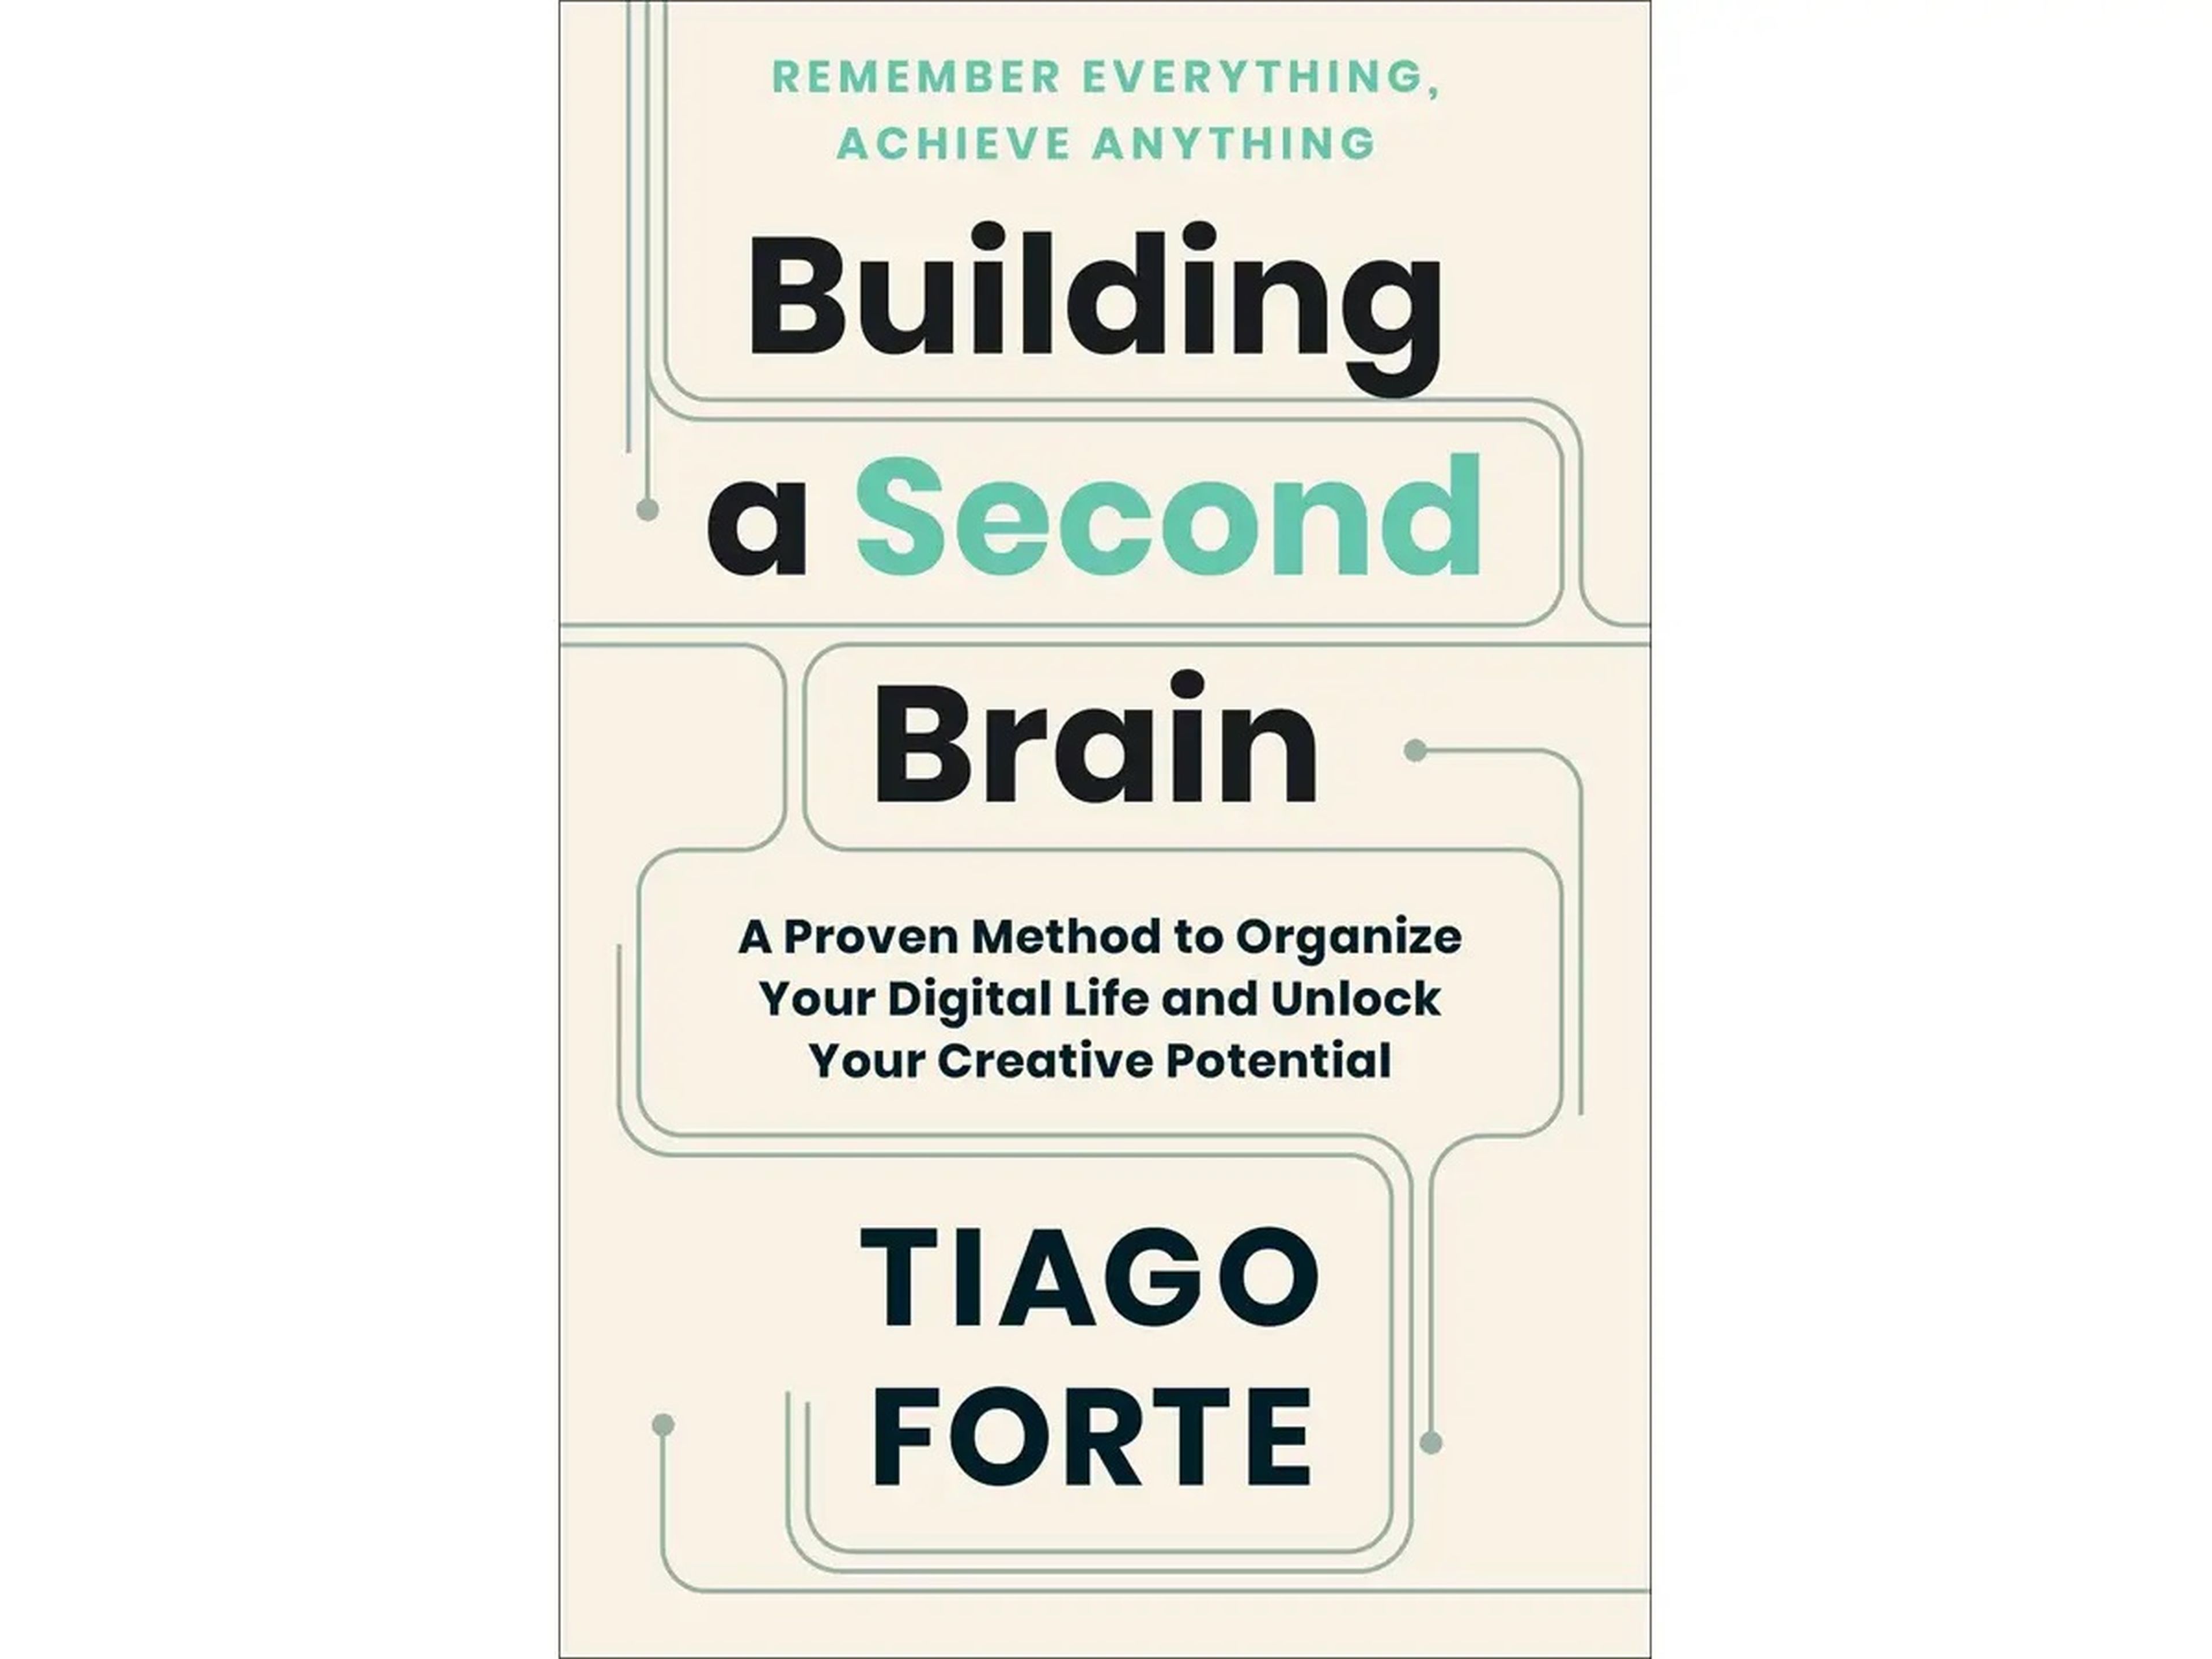 Construyendo un segundo cerebro: Un método probado para organizar tu vida digital y liberar tu potencial creativo, de Tiago Forte.